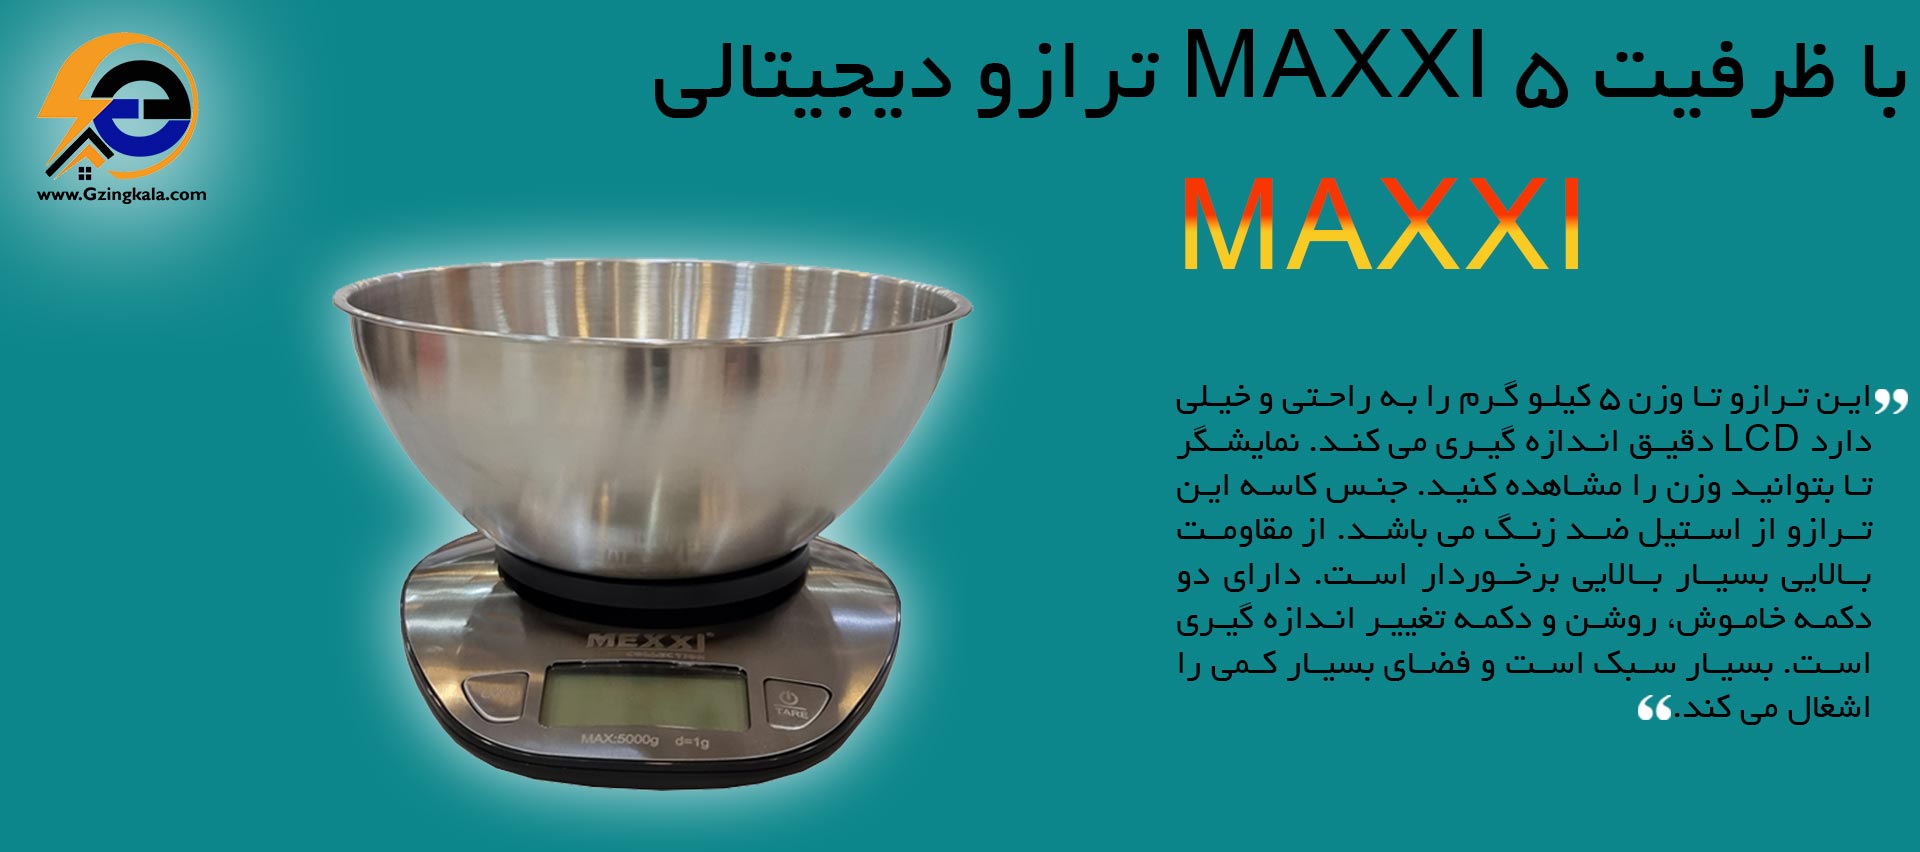 ترازو دیجیتالی MAXXI با ظرفیت 5 کیلوگرم